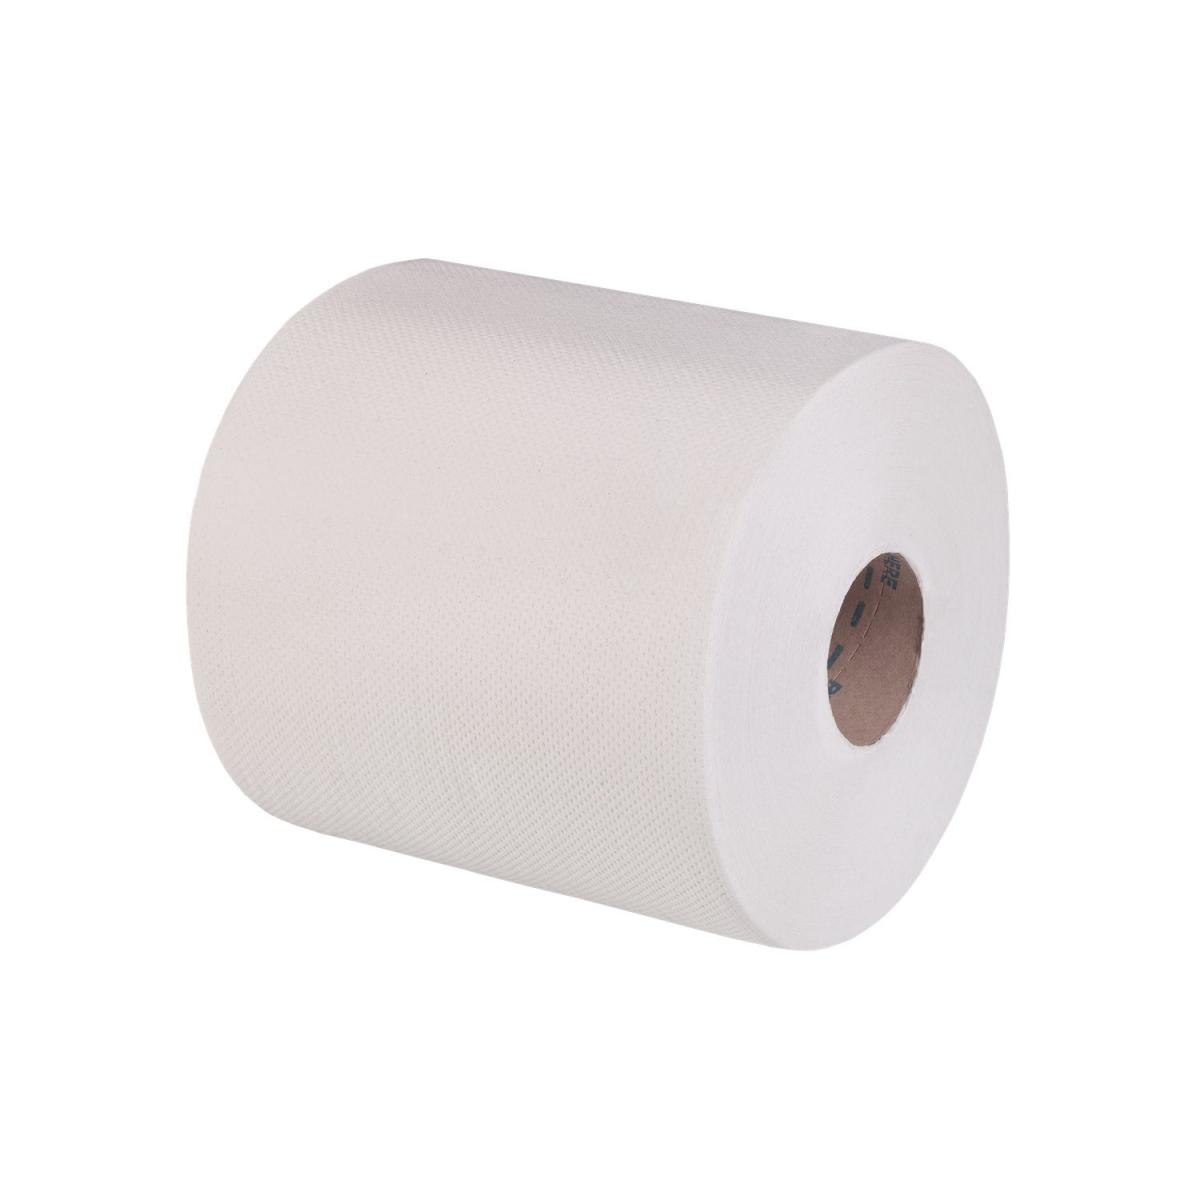 Toilettenpapier weiß, 2-lagig